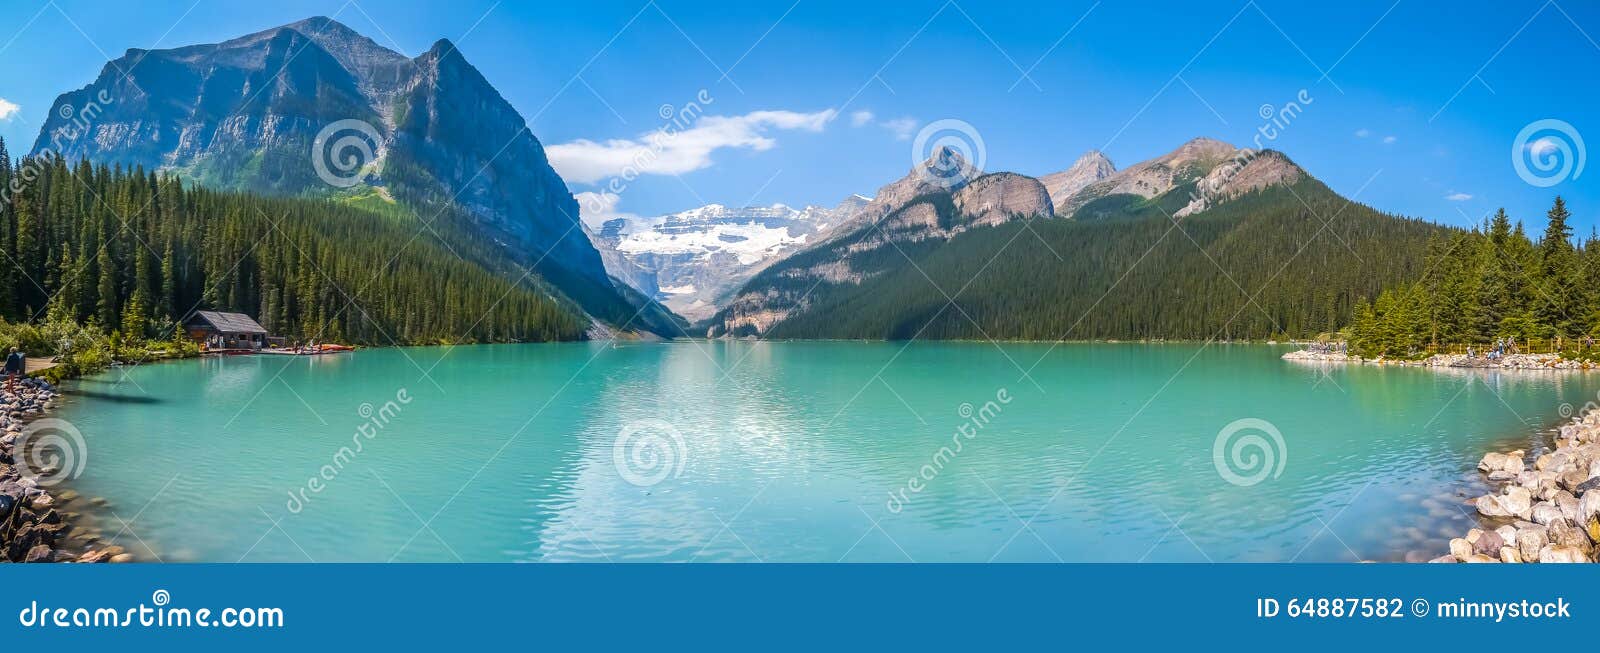 lake louise mountain lake in banff national park, alberta, canada